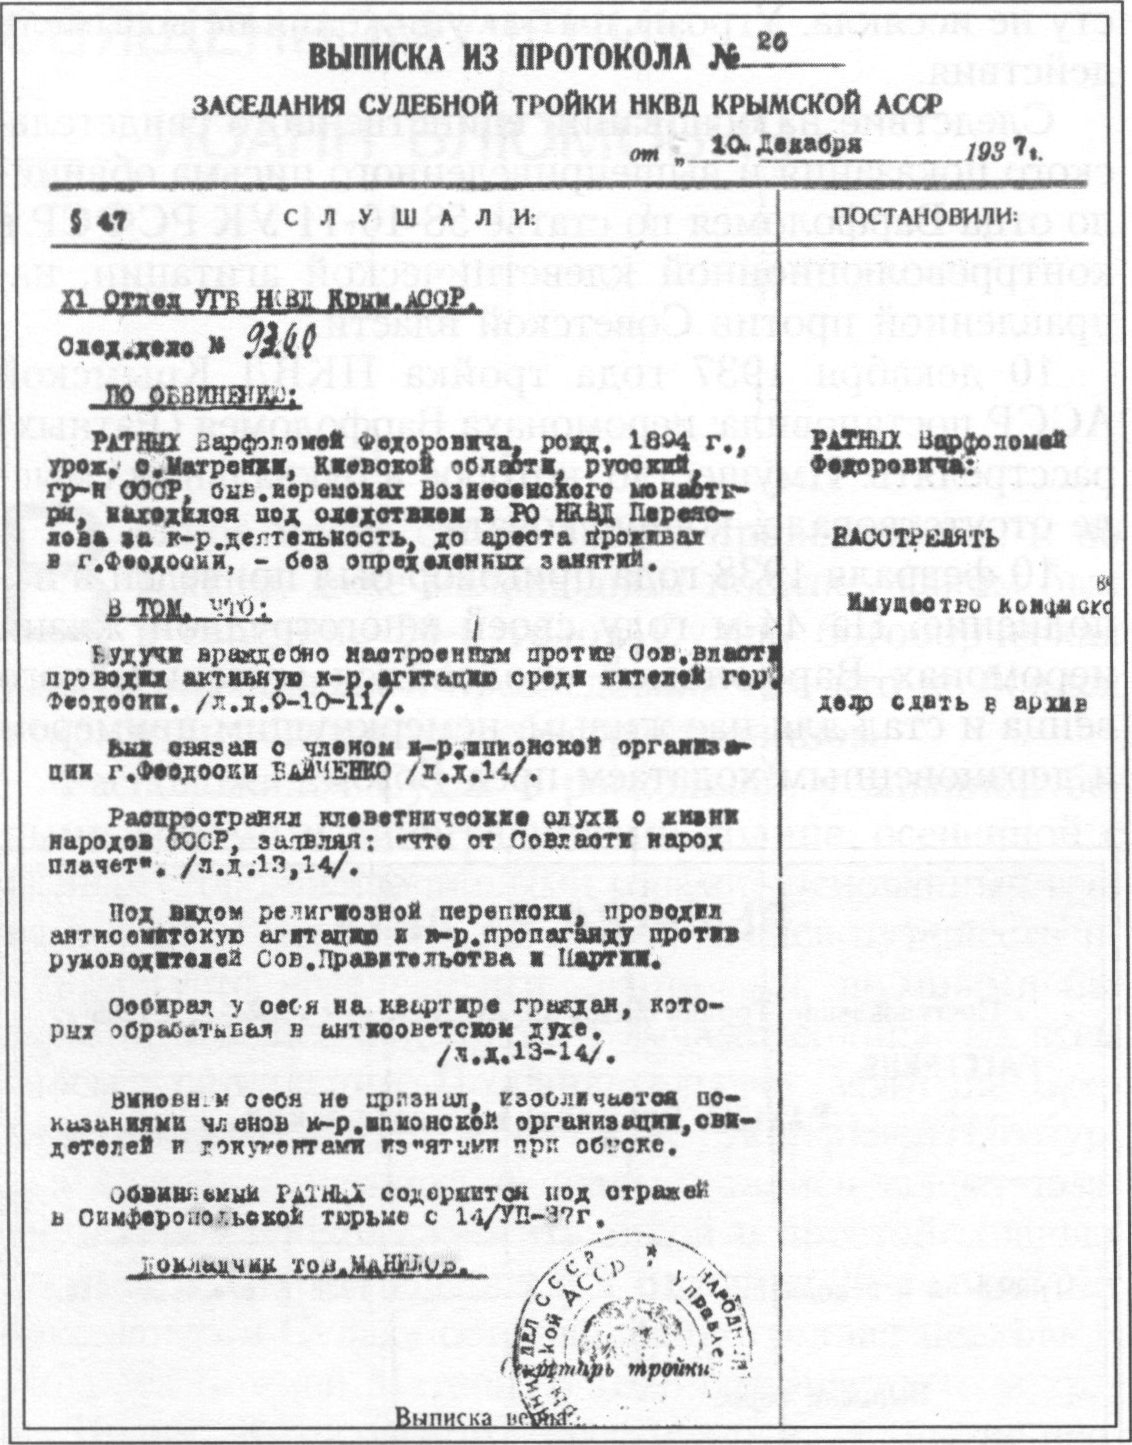 Выписка из протокола заседания тройки НКВД Крымской АССР